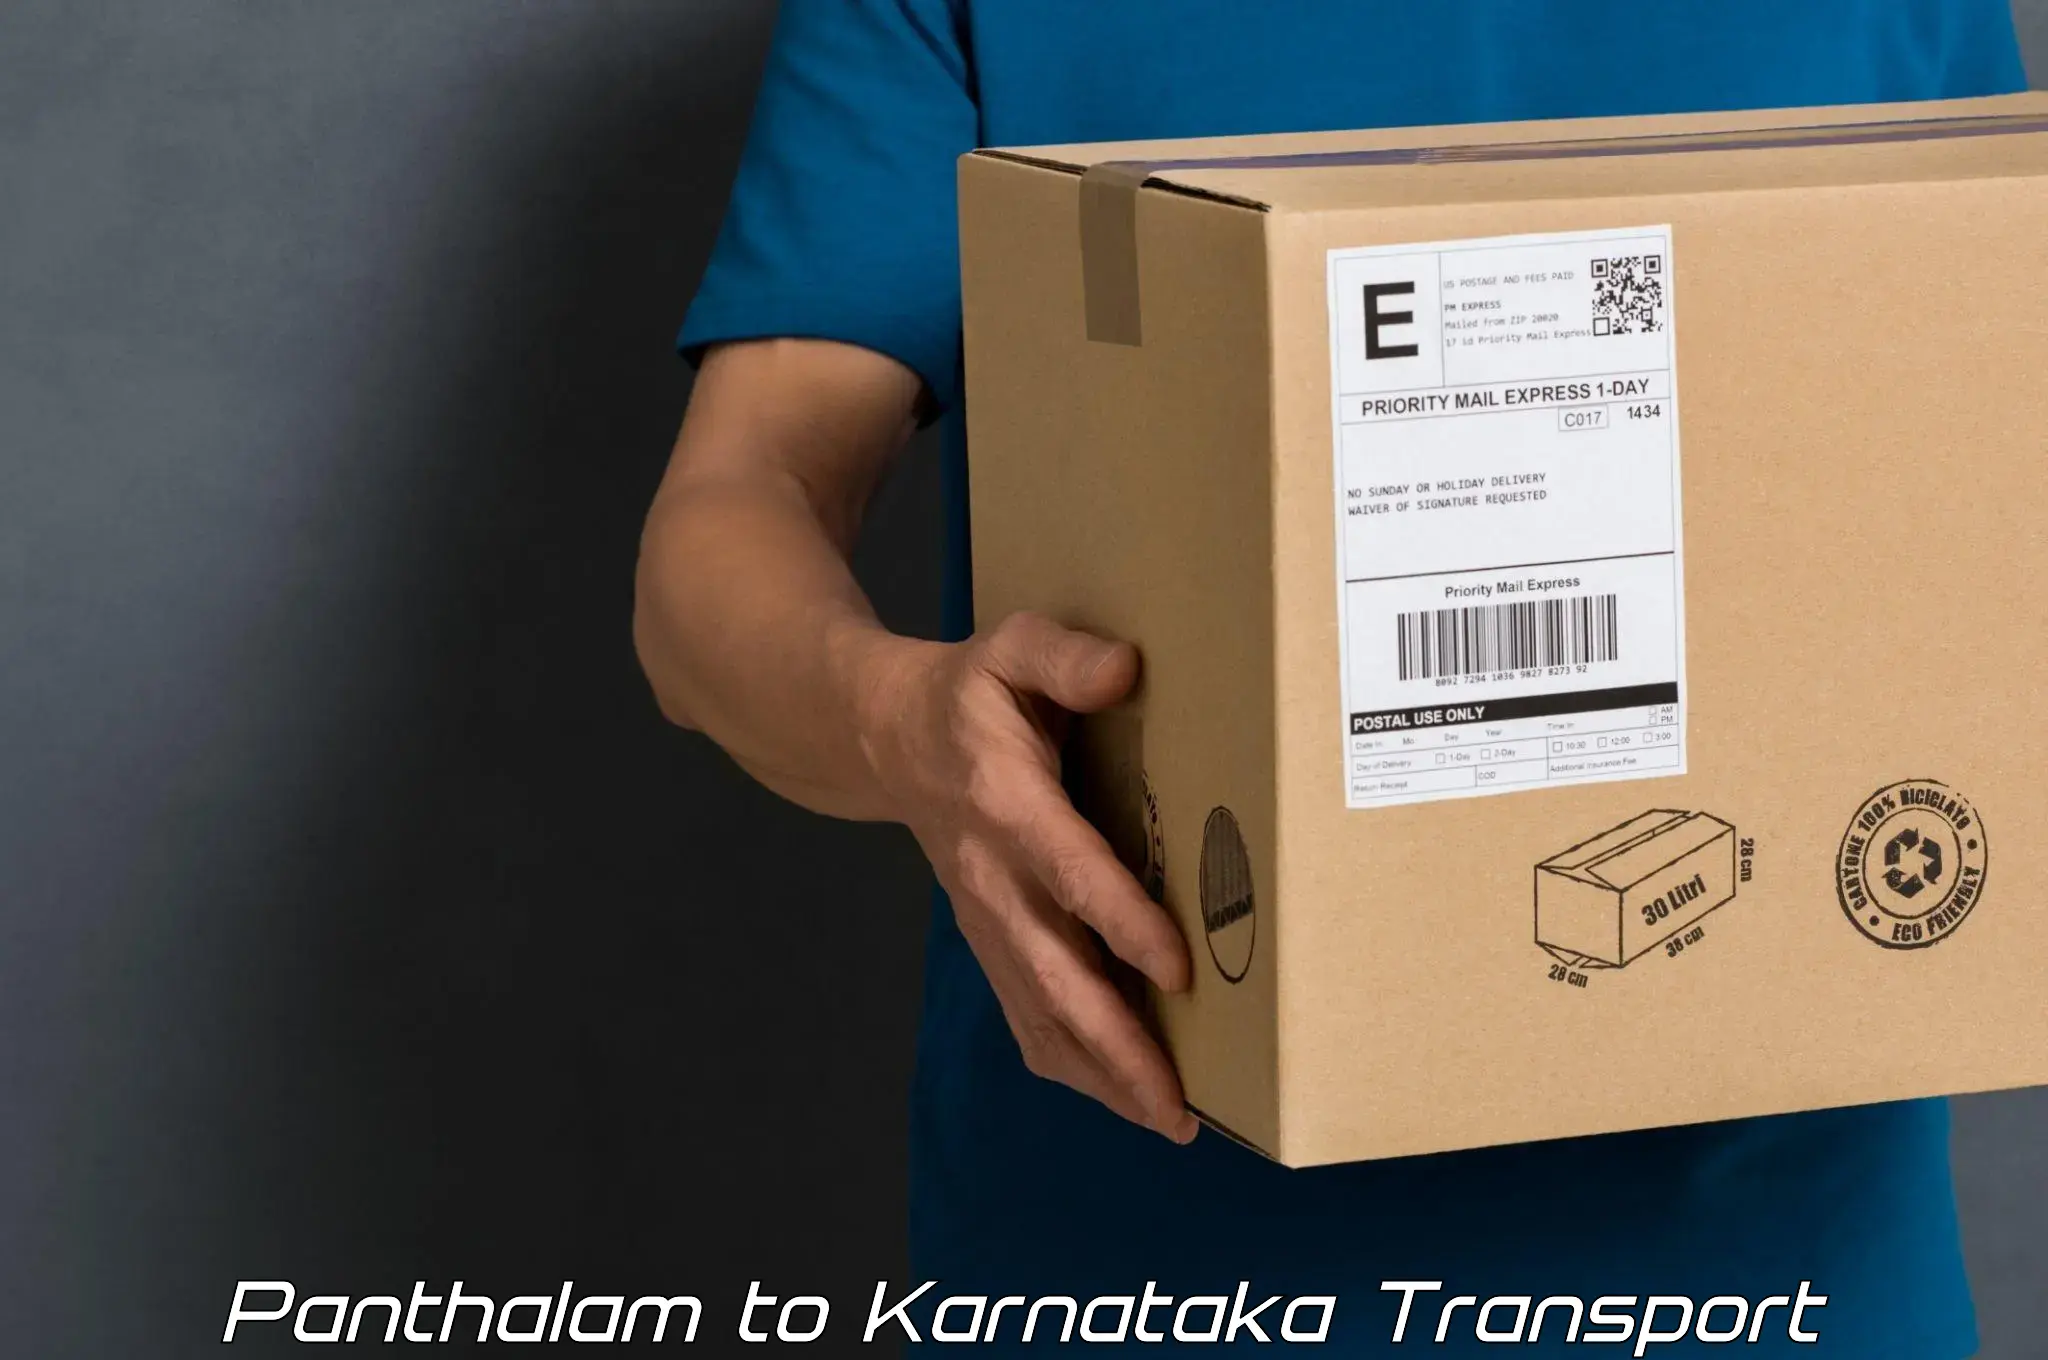 Two wheeler parcel service Panthalam to Karnataka